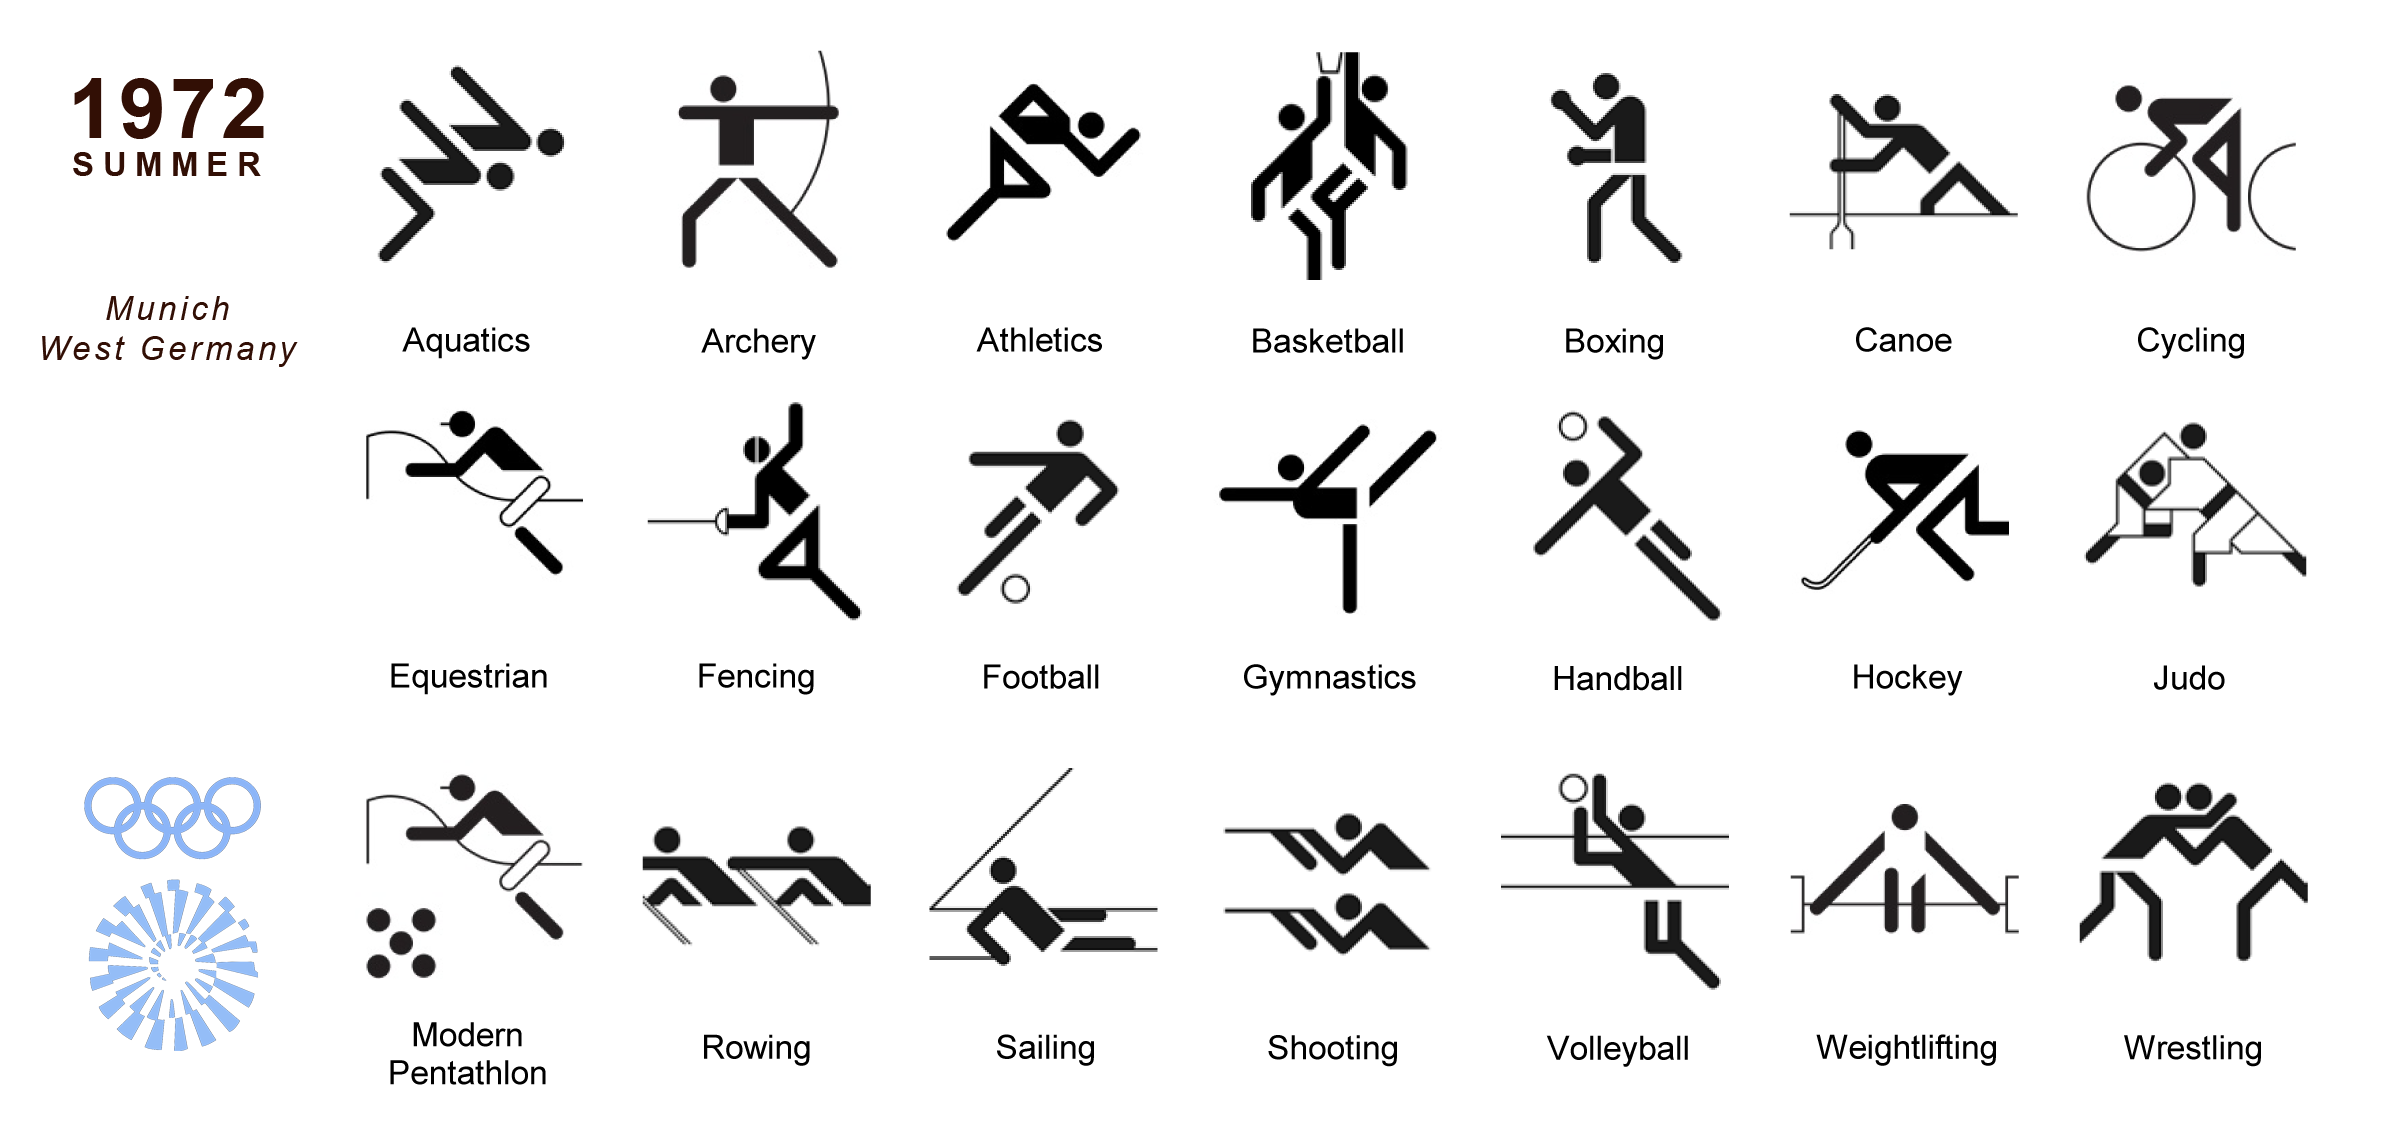 Схематические обозначения видов спорта. Пентаграмма Олимпийских видов спорта. Пиктограммы Олимпийских видов спорта с названиями. Назовите представленные символы